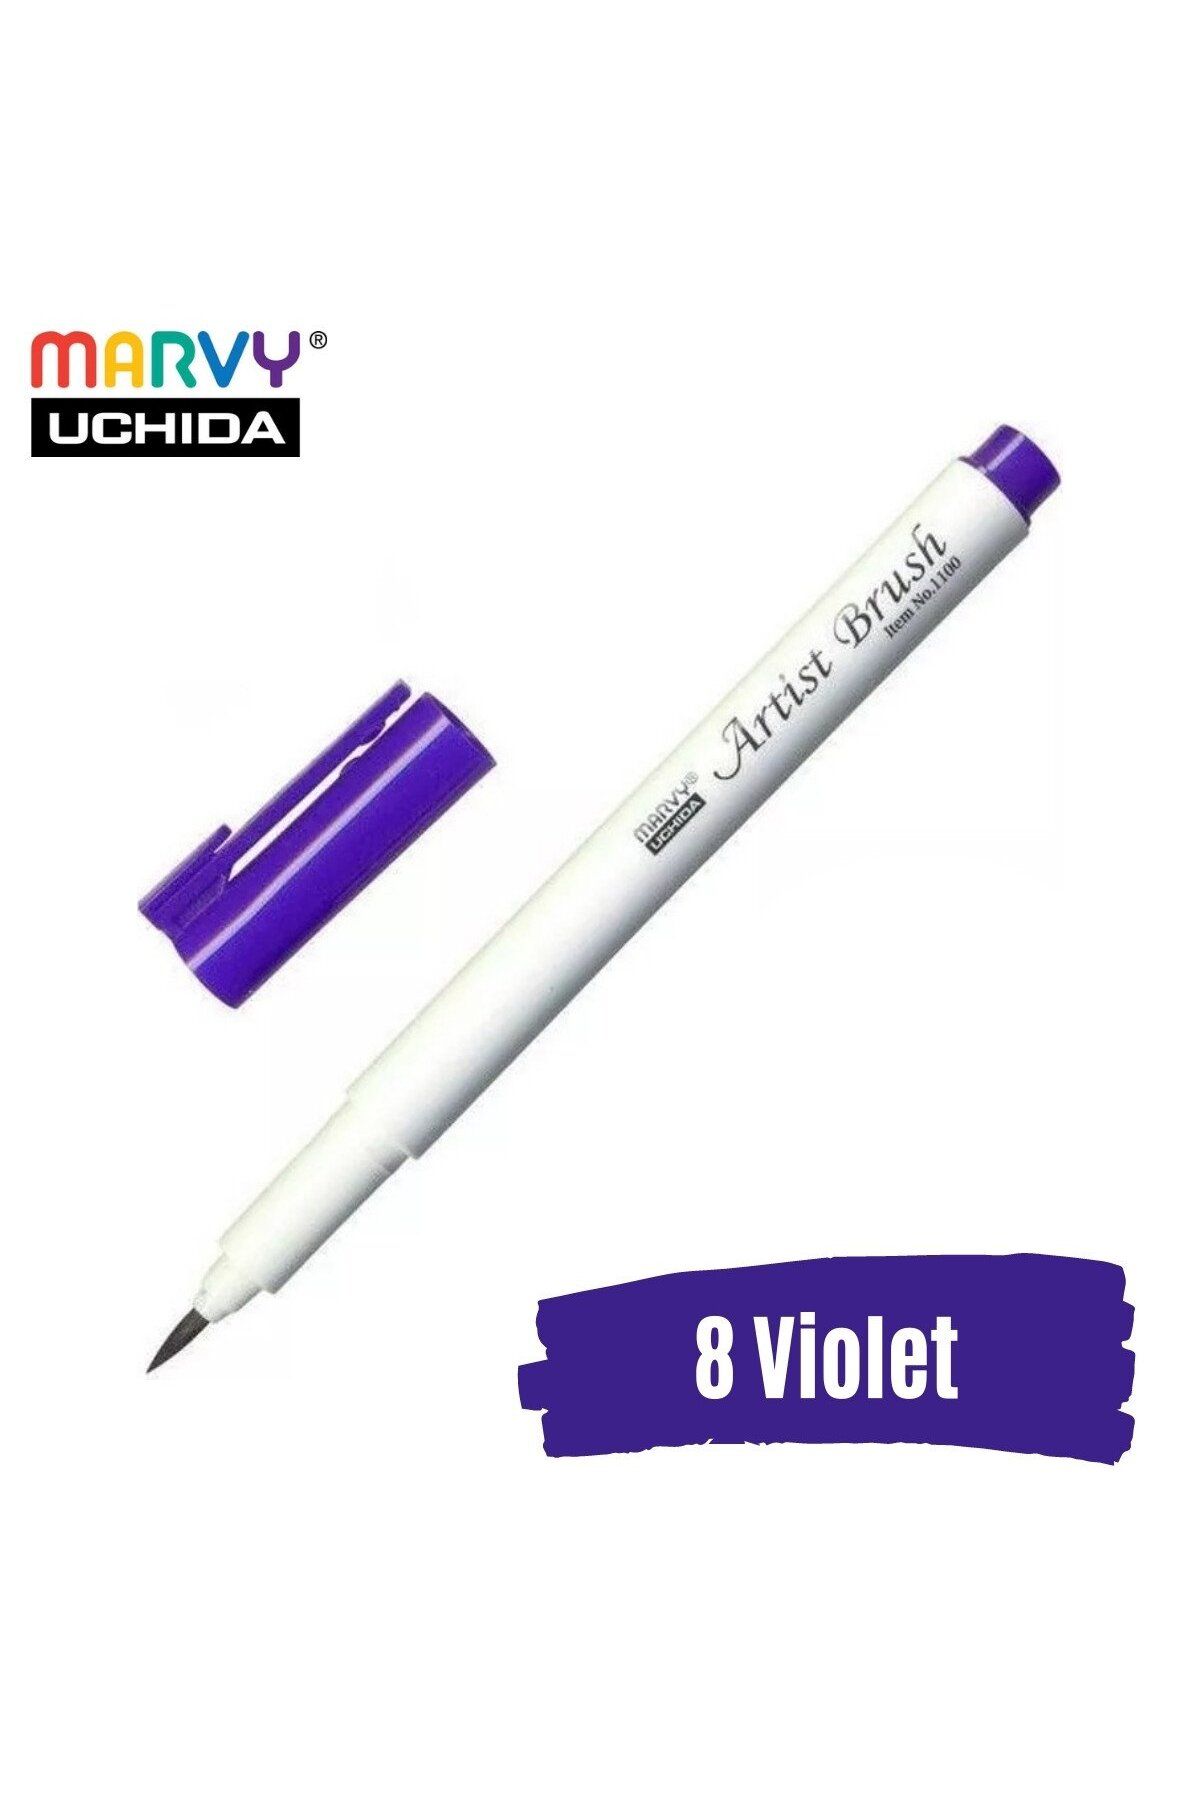 Marvy Artist Brush Pen 1100 Firça Uçlu Kalem 08 Violet